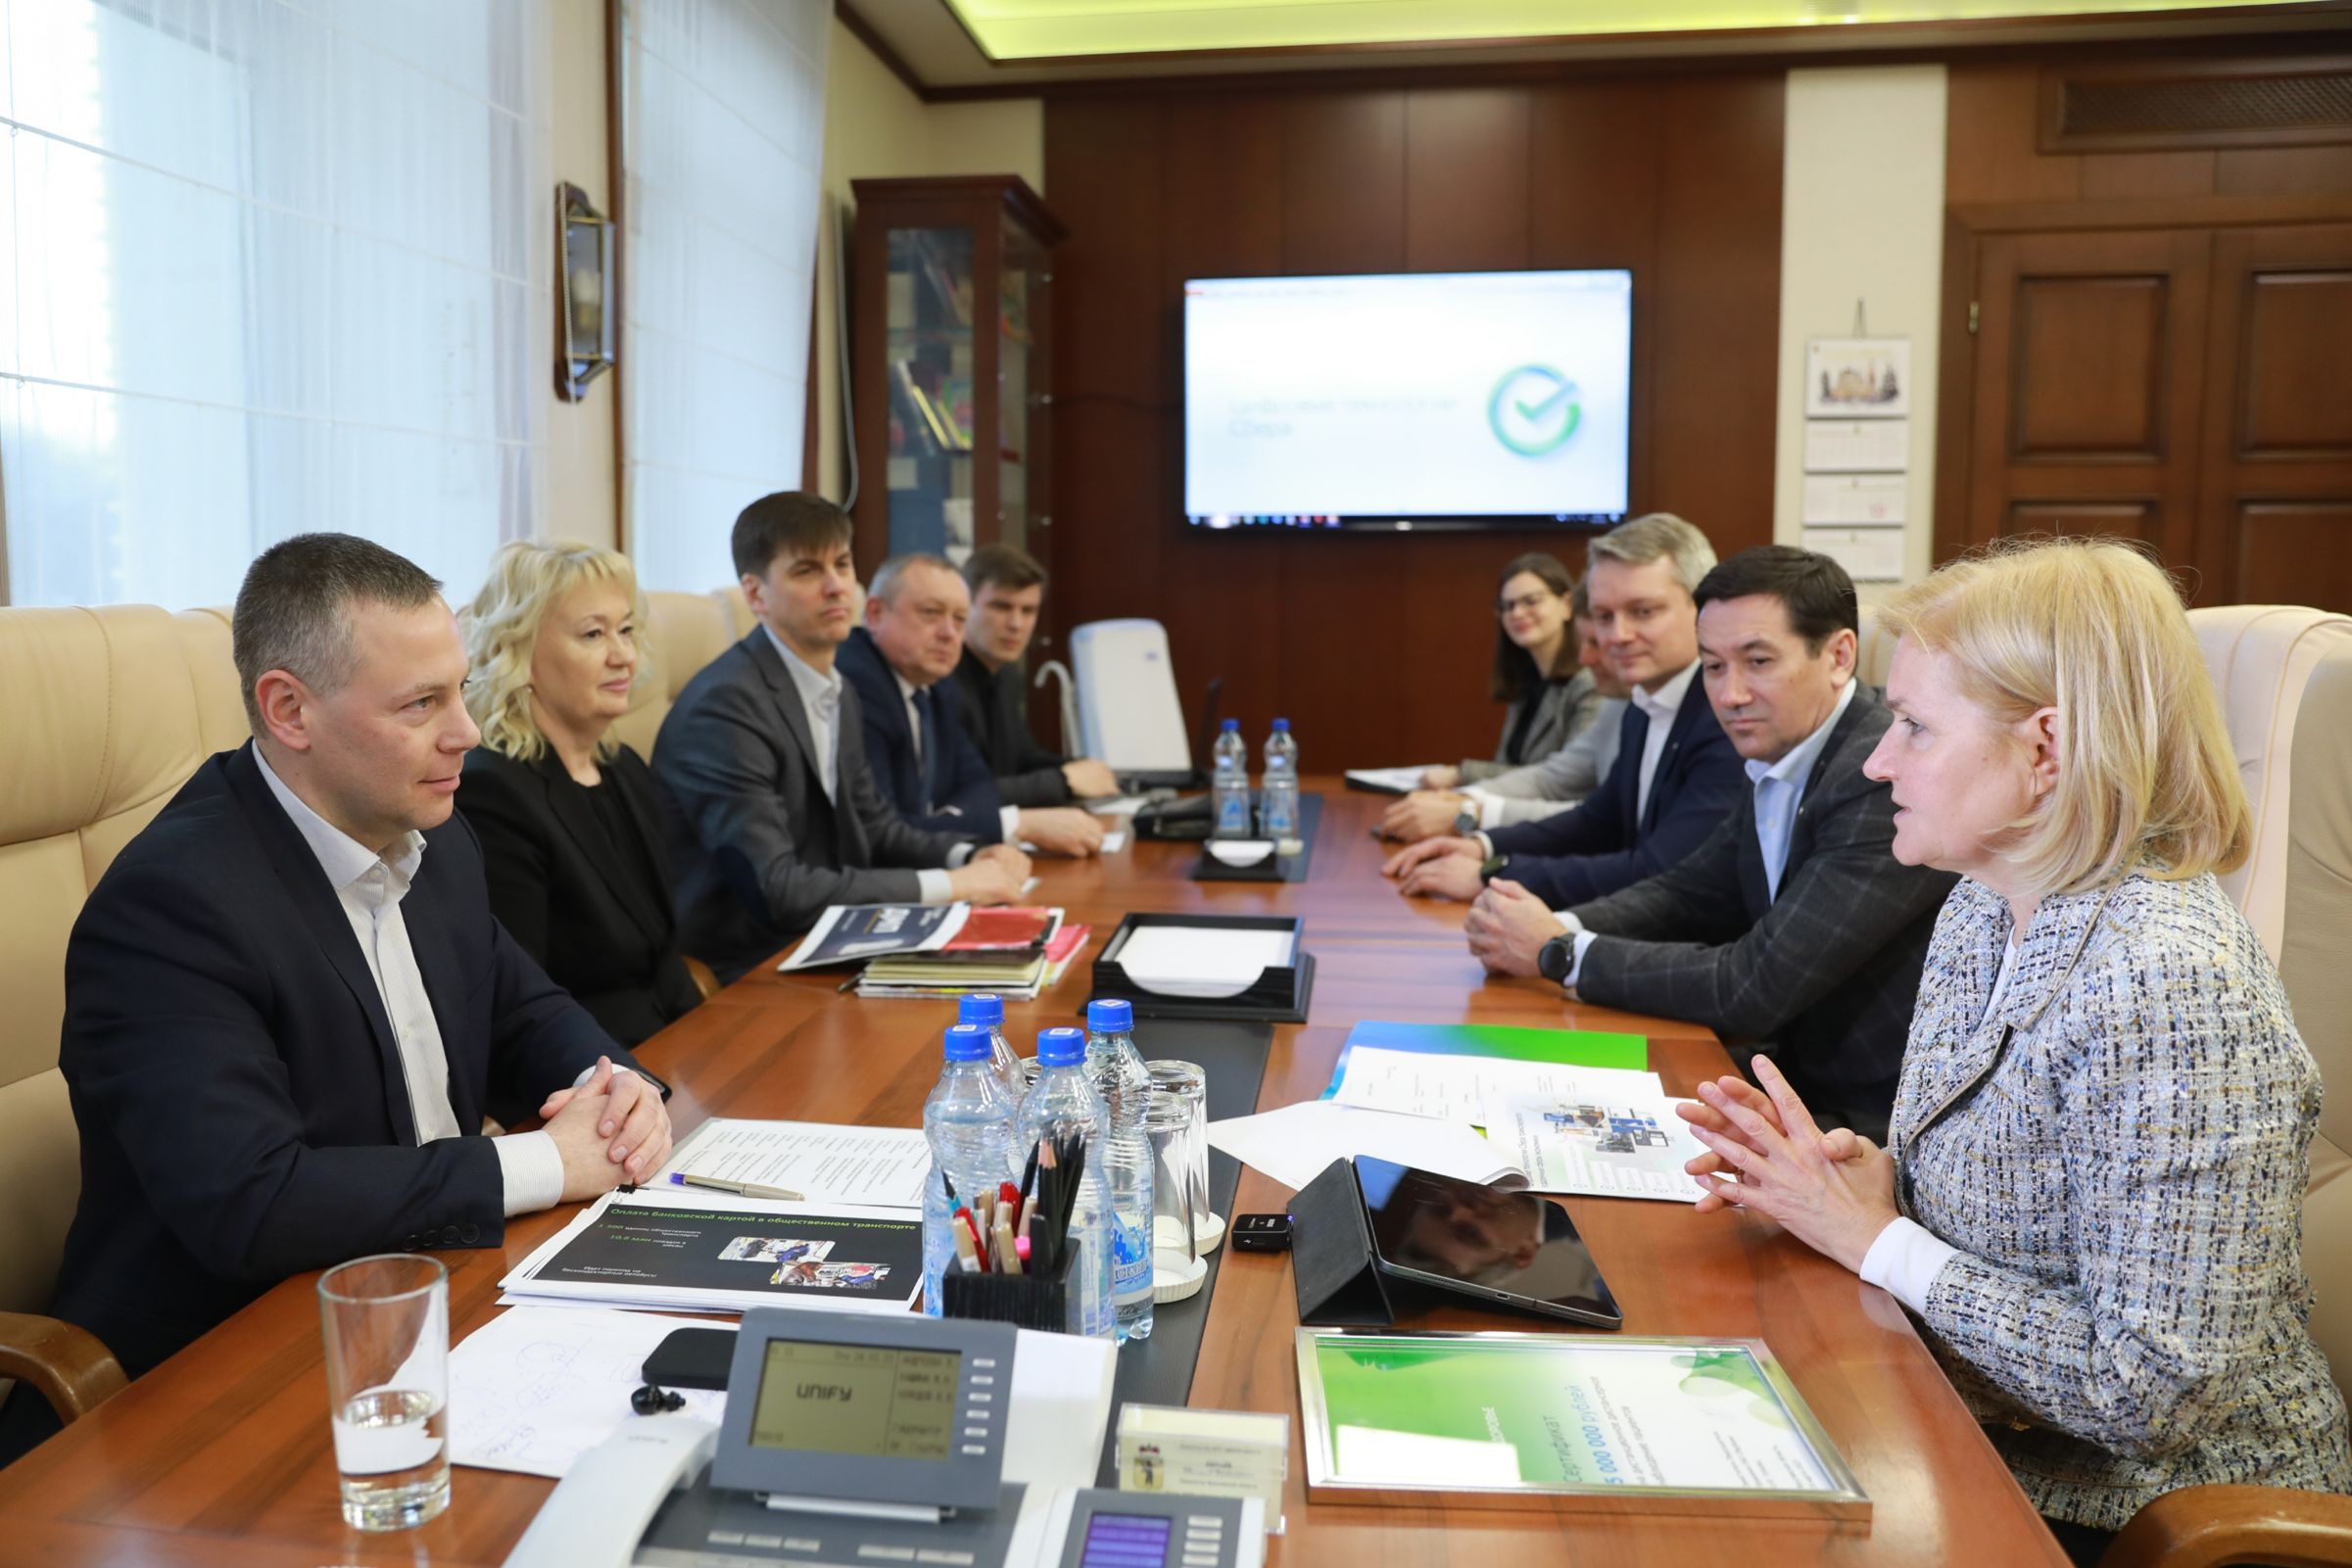 Губернатор Михаил Евраев обсудил с зампредом Сбербанка Ольгой Голодец совместные проекты в регионе